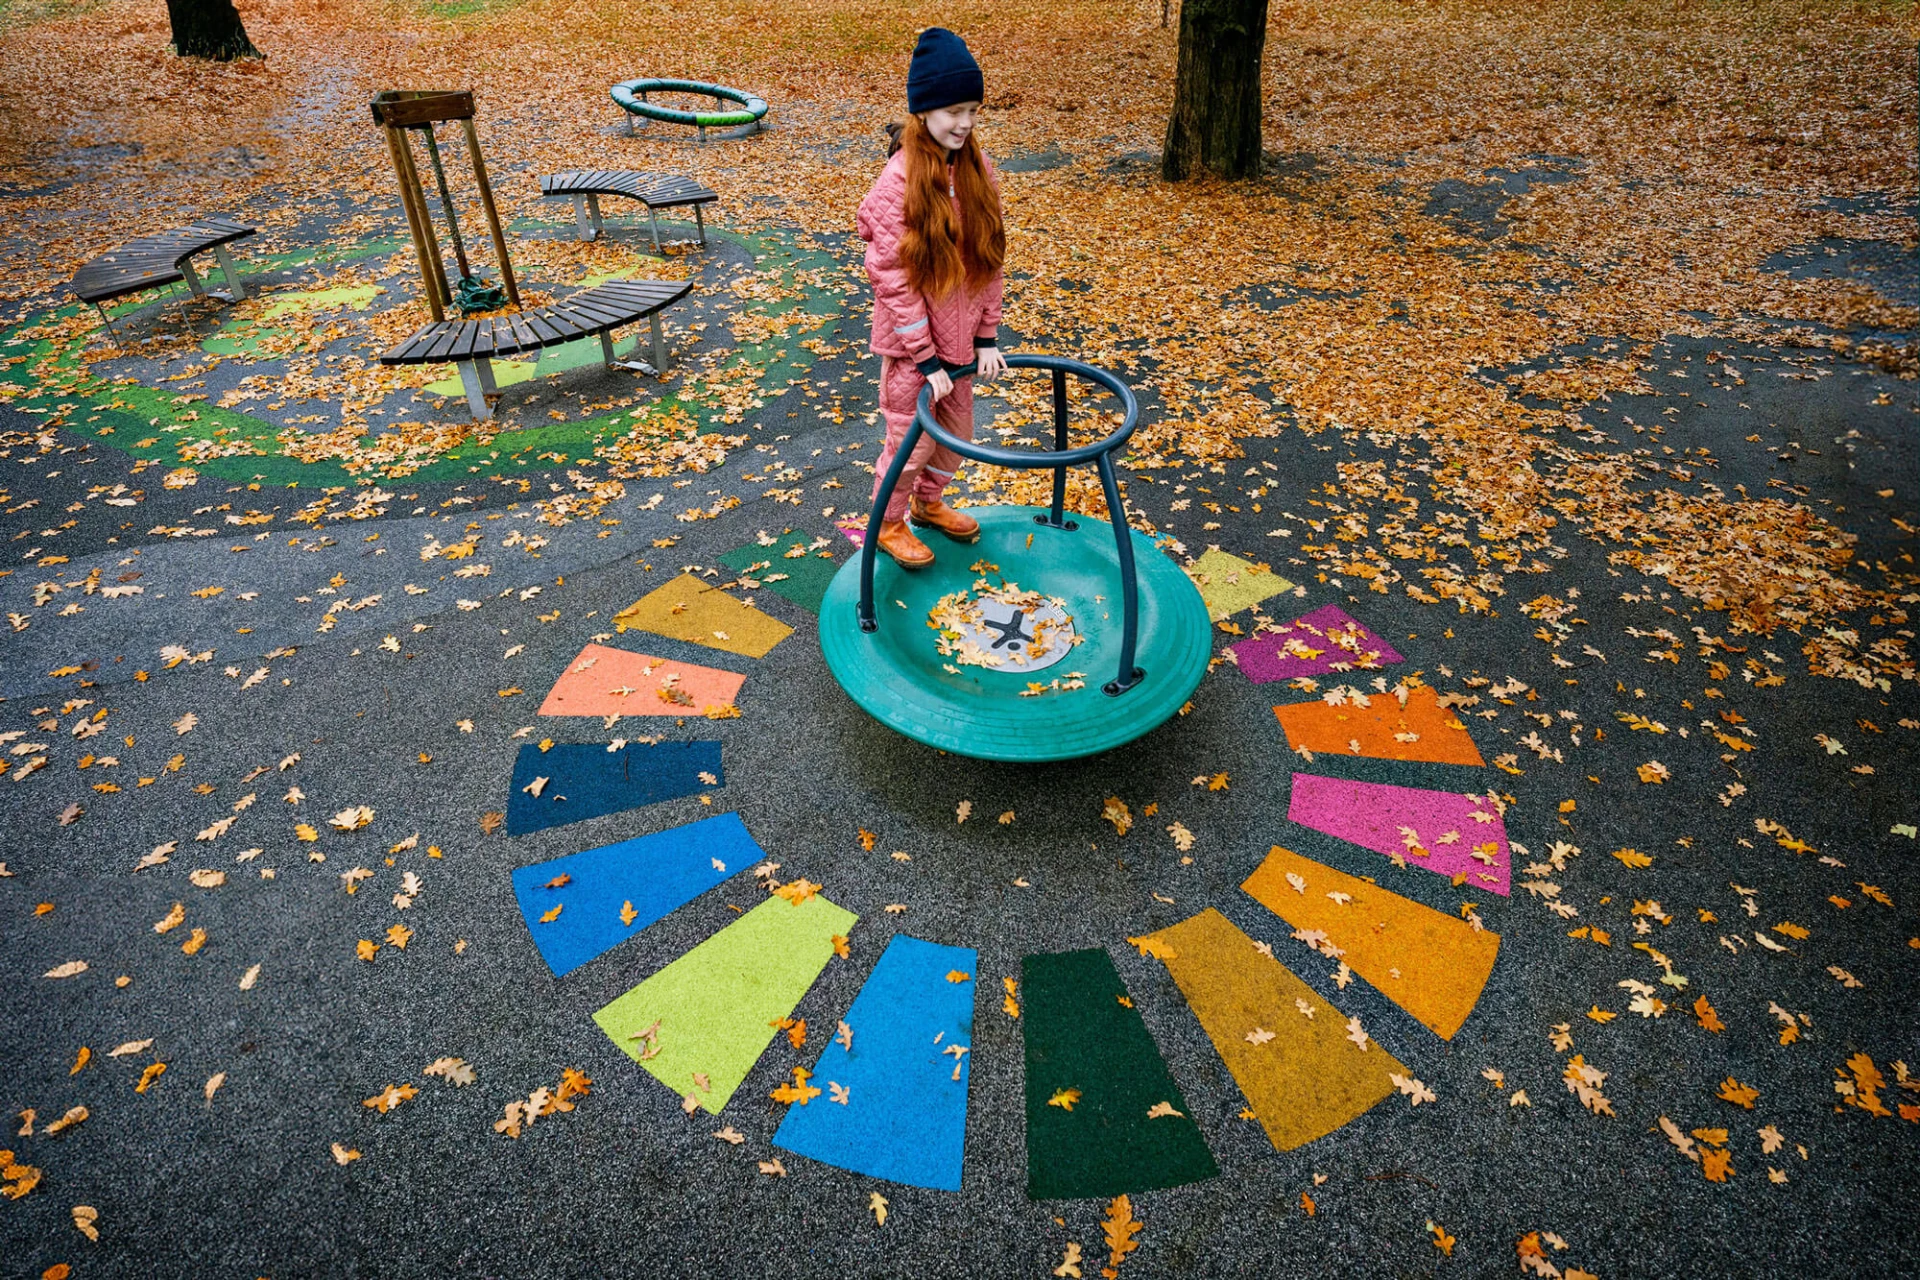 Ragazza che gioca su una giostra del parco giochi con superfici colorate